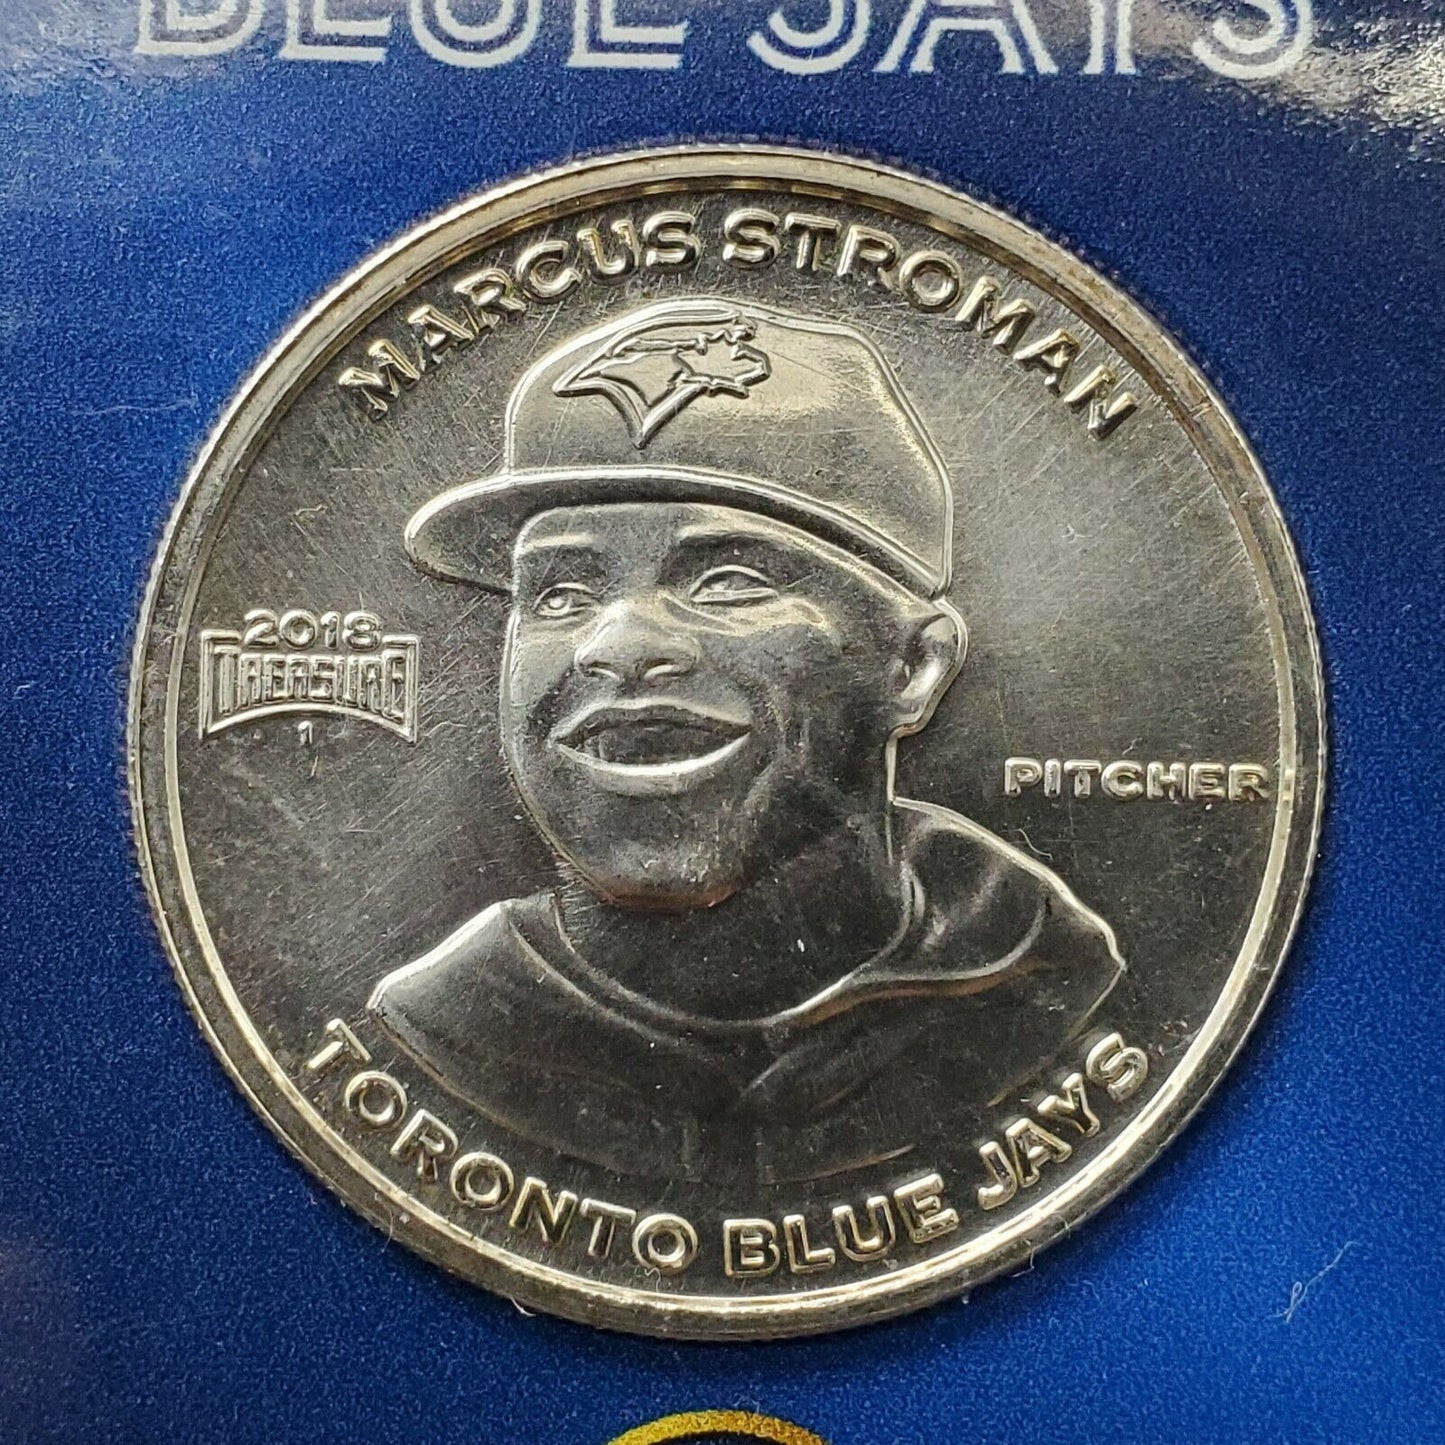 2018 Toronto Blue Jays Marcus Stroman 1 oz Silver Collectible Baseball Card Coin